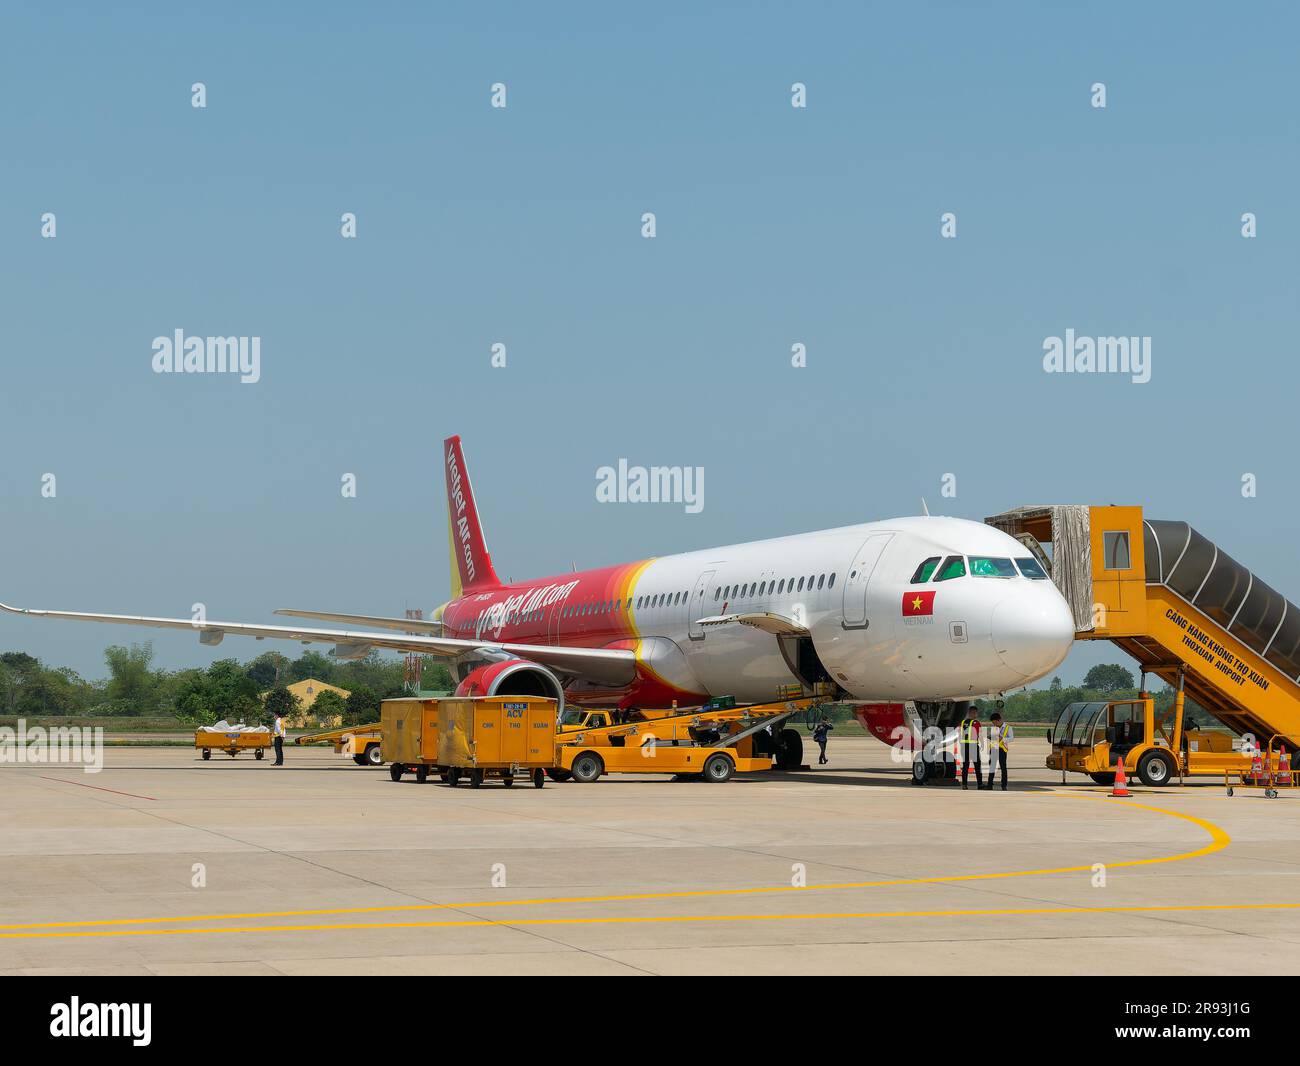 Thanh Hoa, Vietnam - 7 avril 2018 : Airbus A321 NEO de VieJet à l'aéroport de Tho Xuan à Thanh Hoa, Vietnam. VieJet est une compagnie aérienne à budget leader au Vietnam Banque D'Images